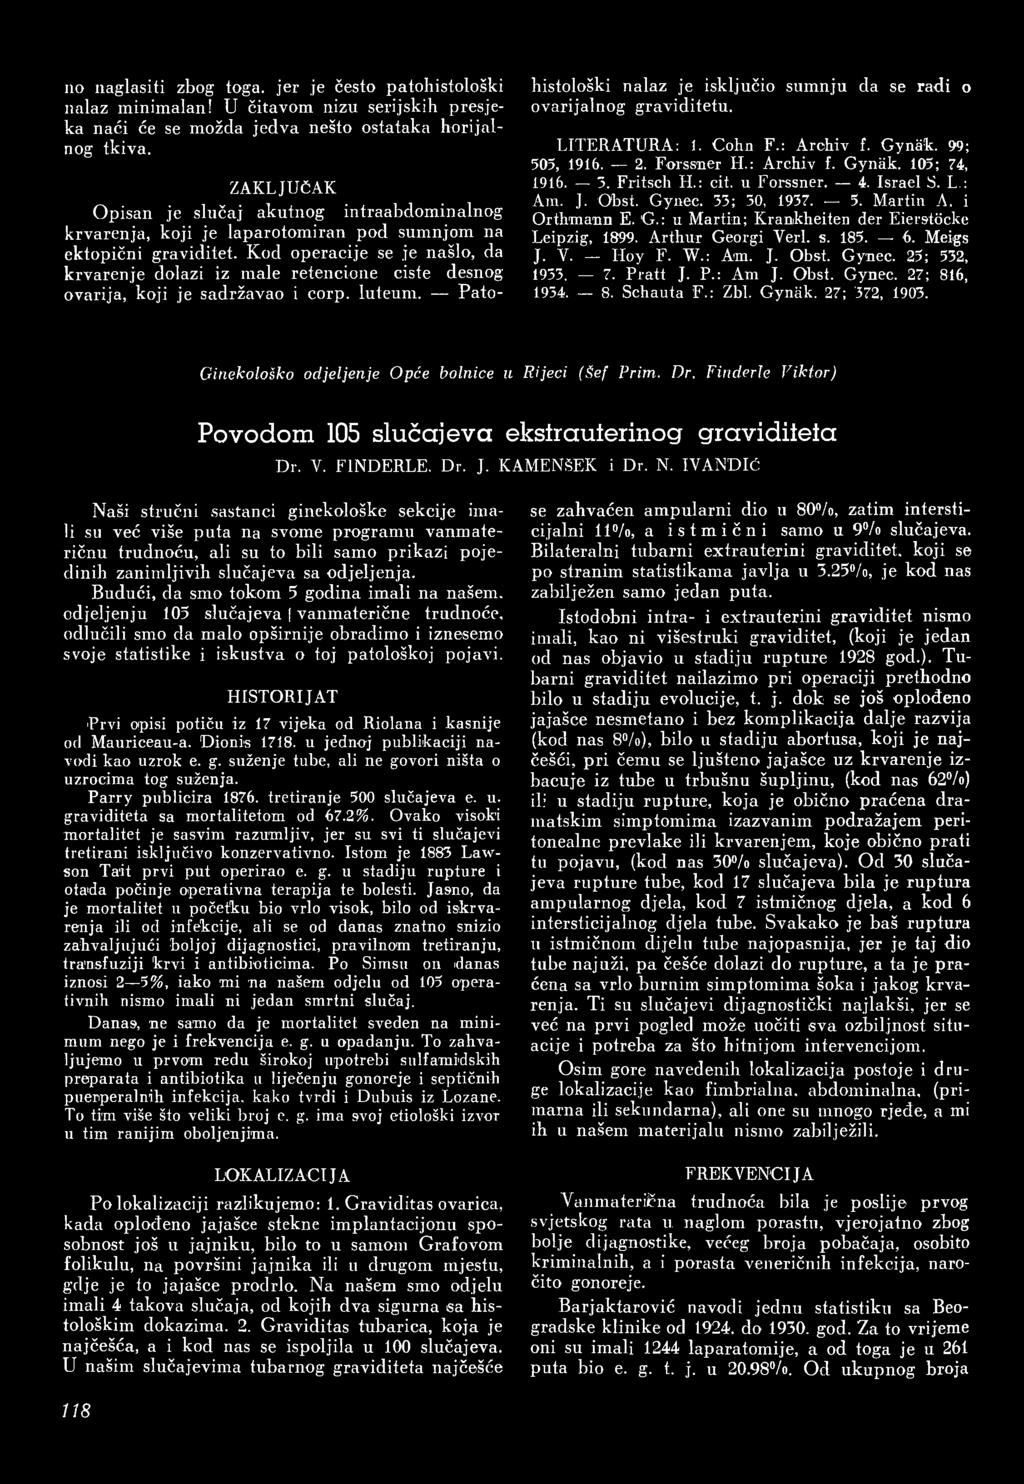 i Orthmann E. G.: u Martin; Krankheiten der Eierstöcke Leipzig, 1899. Arthur Georgi Yerl. s. 185. 6. Meigs J. V. ILoy F. W.: Am. J. Obst. Gynec. 25; 532, 1933. 7. Pratt J. P.: Am J. Obst. Gynec. 27; 816, 1934.